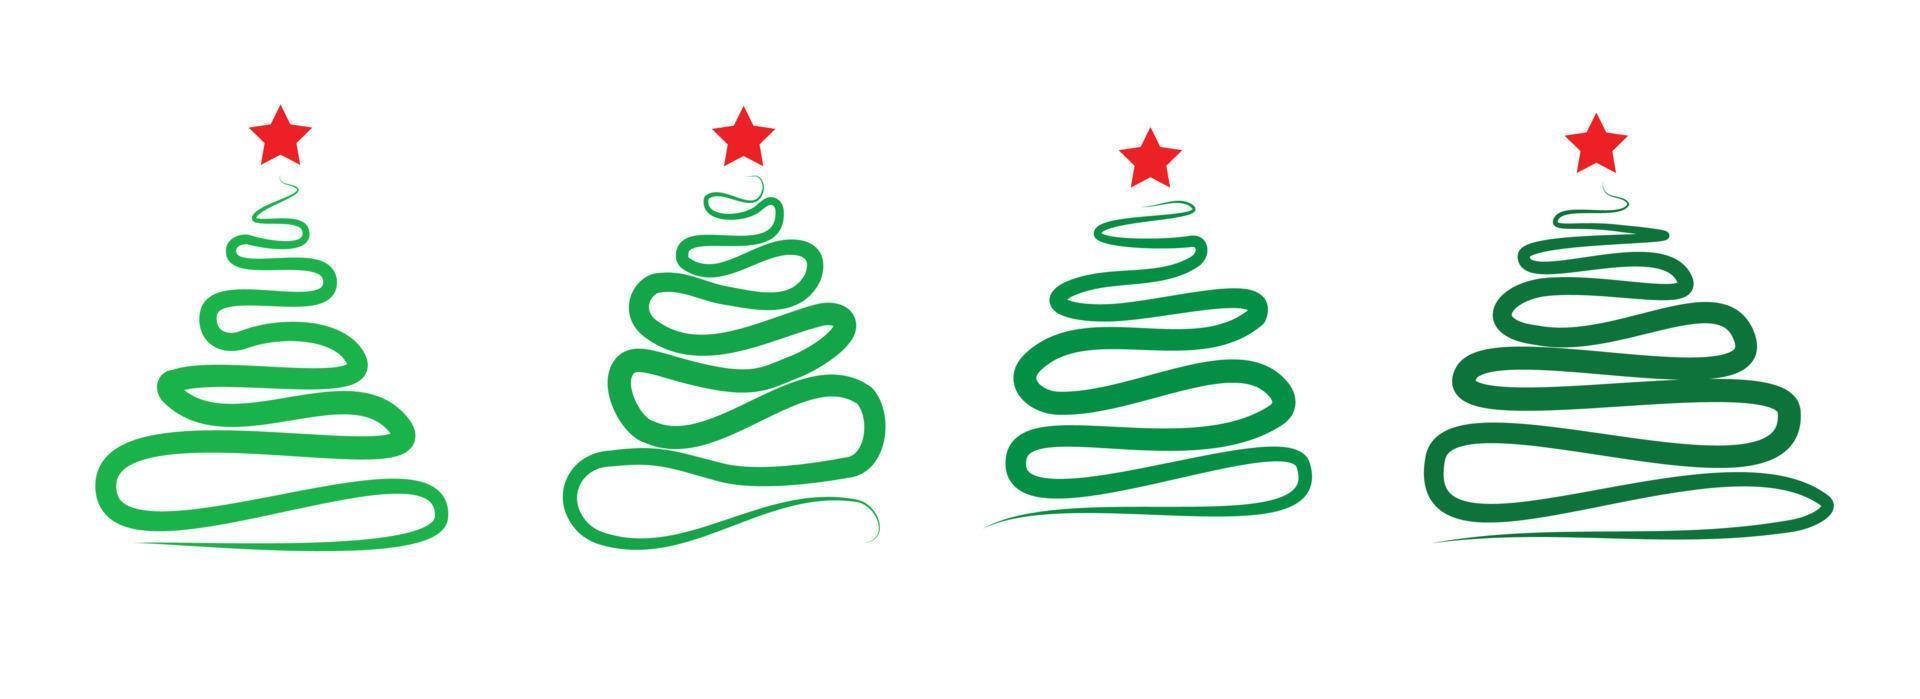 uppsättning färgglada gröna julgranar isolerad på vit bakgrund med röd stjärna vektor